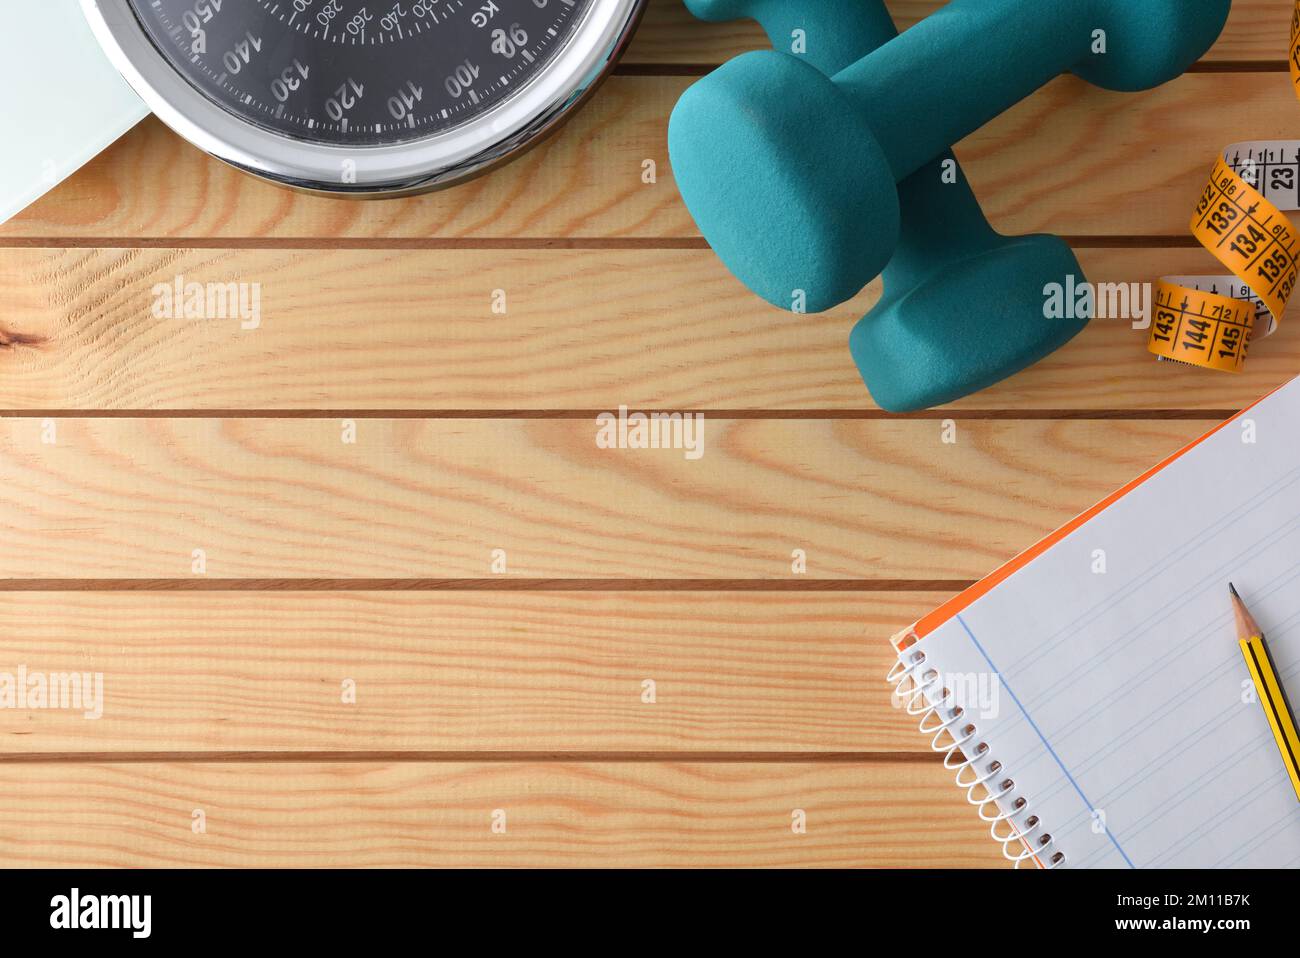 Persönlicher Trainingsplan zur Gewichtskontrolle mit Sportgeräten und Körpermessung auf einem Holztisch und Notizblock. Draufsicht. Stockfoto